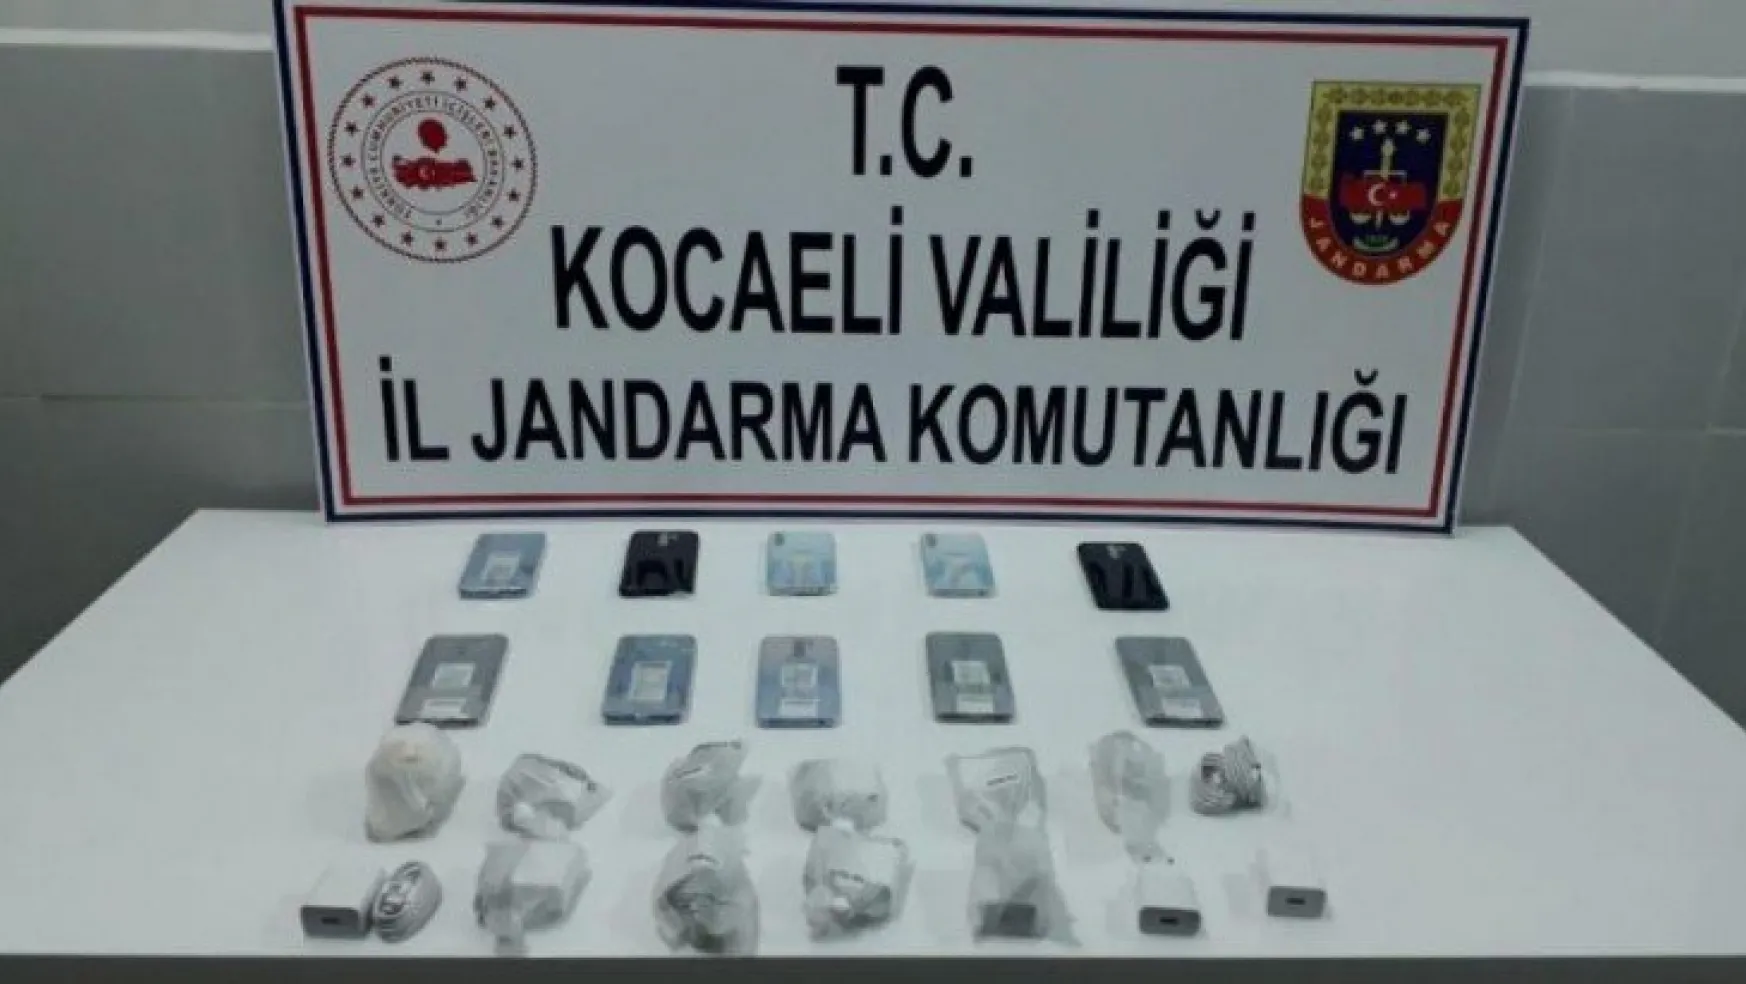 Kocaeli'de 40 bin TL değerinde gümrük kaçağı cep telefonu ele geçirildi